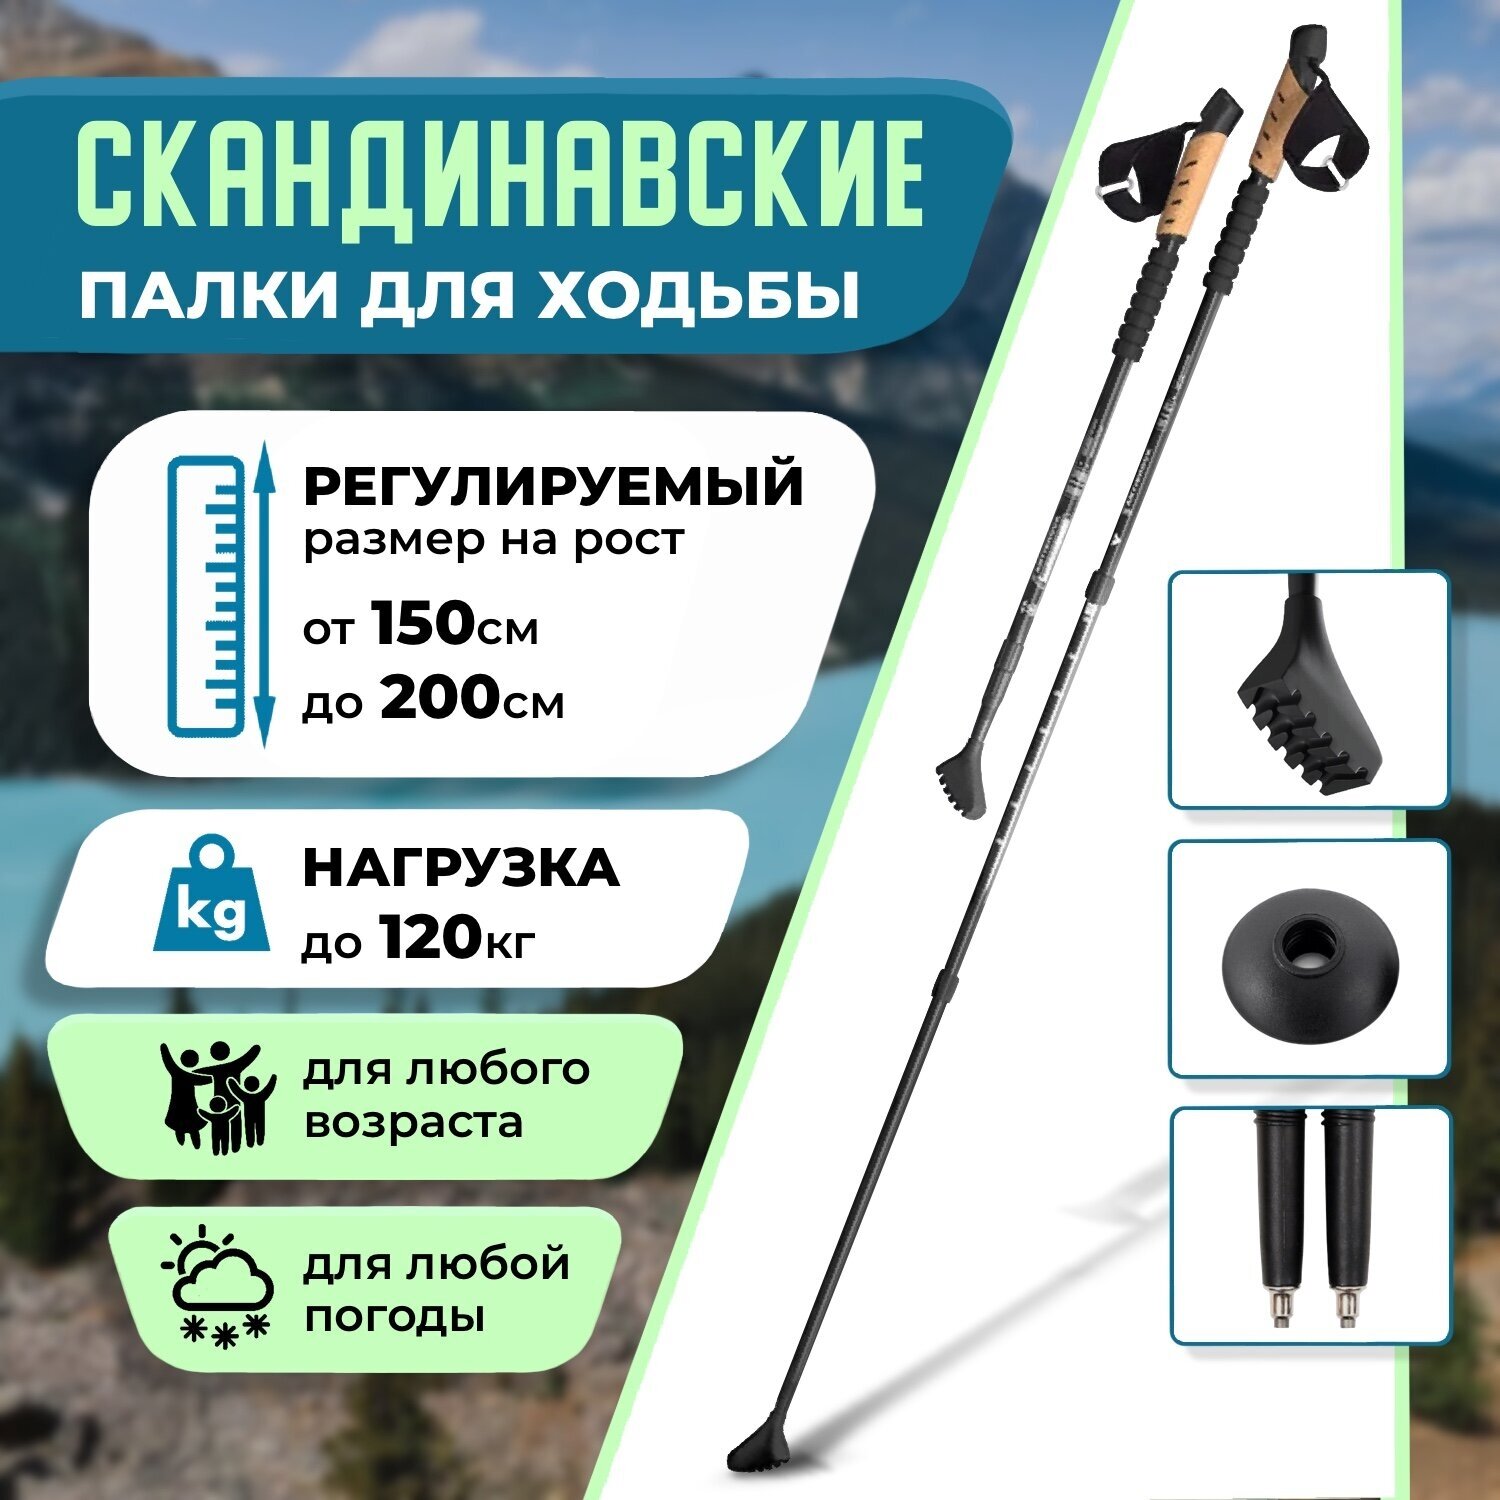 Скандинавские палки для ходьбы Chit. Store телескопические складные и компактные товары для похода и активного отдыха зимой спортивный инвентарь для природы туристические аксессуары